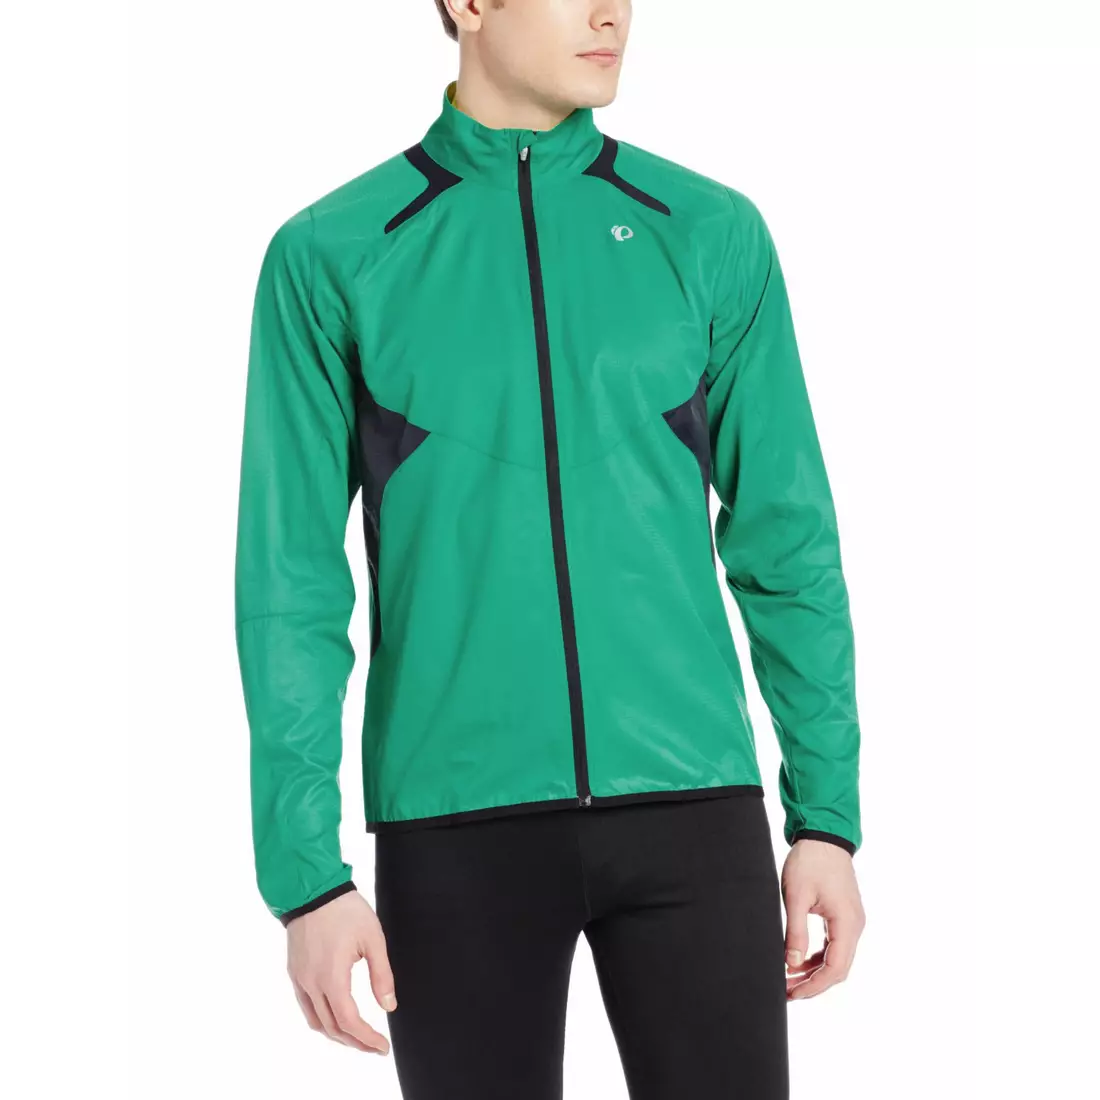 PEARL IZUMI FLY 12131402-4DF - pánska bežecká bunda, farba: zelená